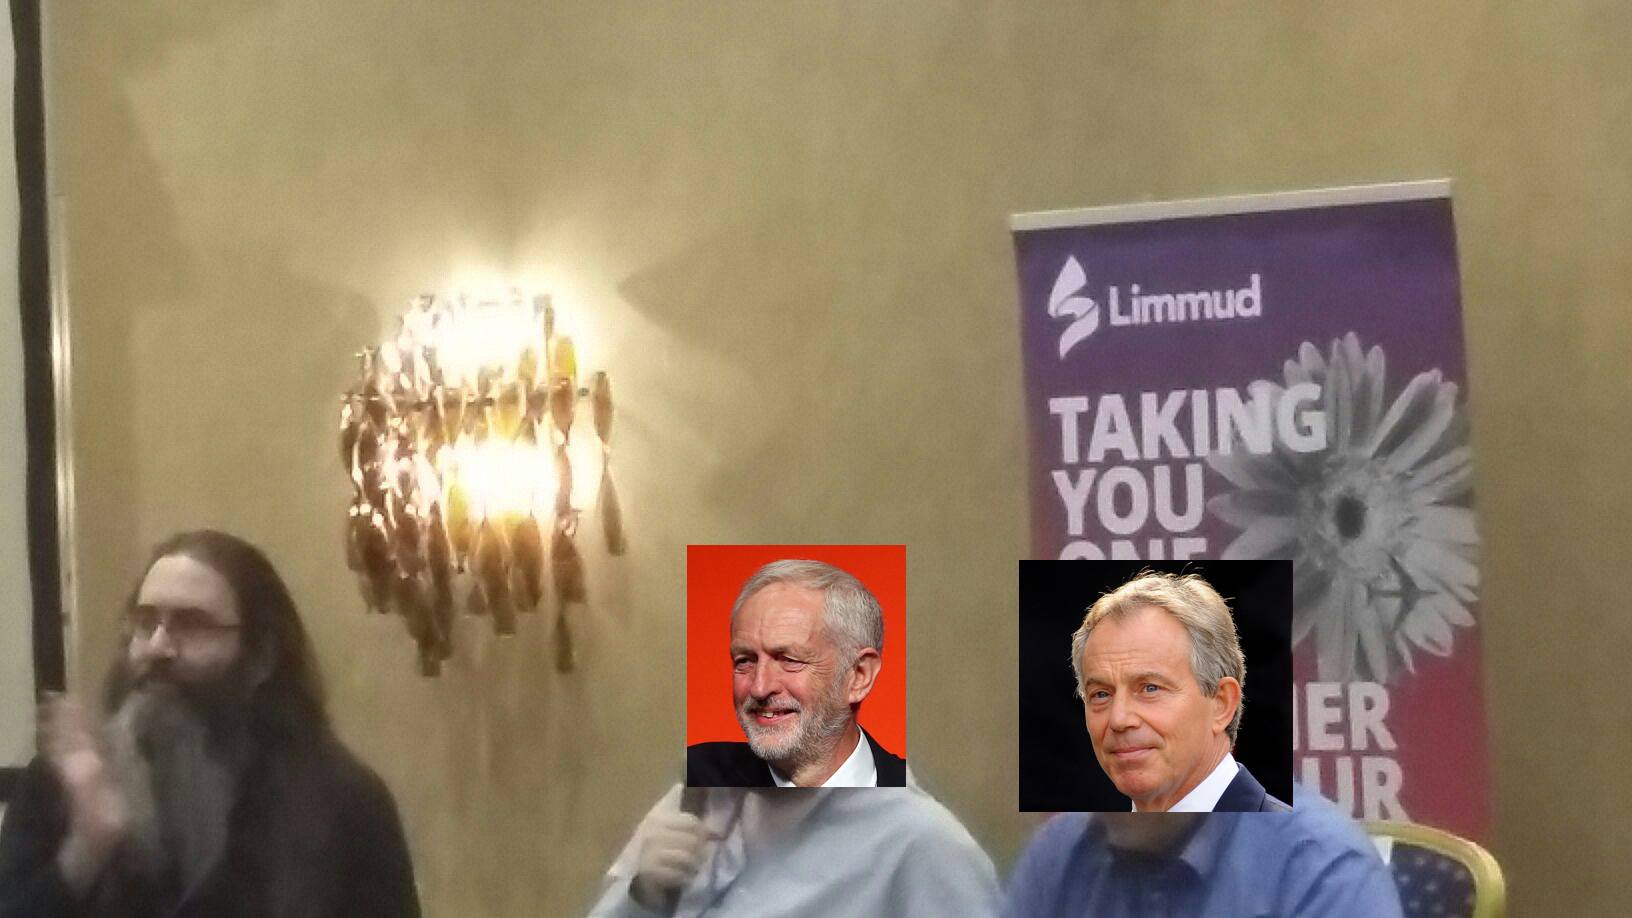 Keith moderates Dan Corbyn and Barnaby Blair at a Session at Limmud 2019